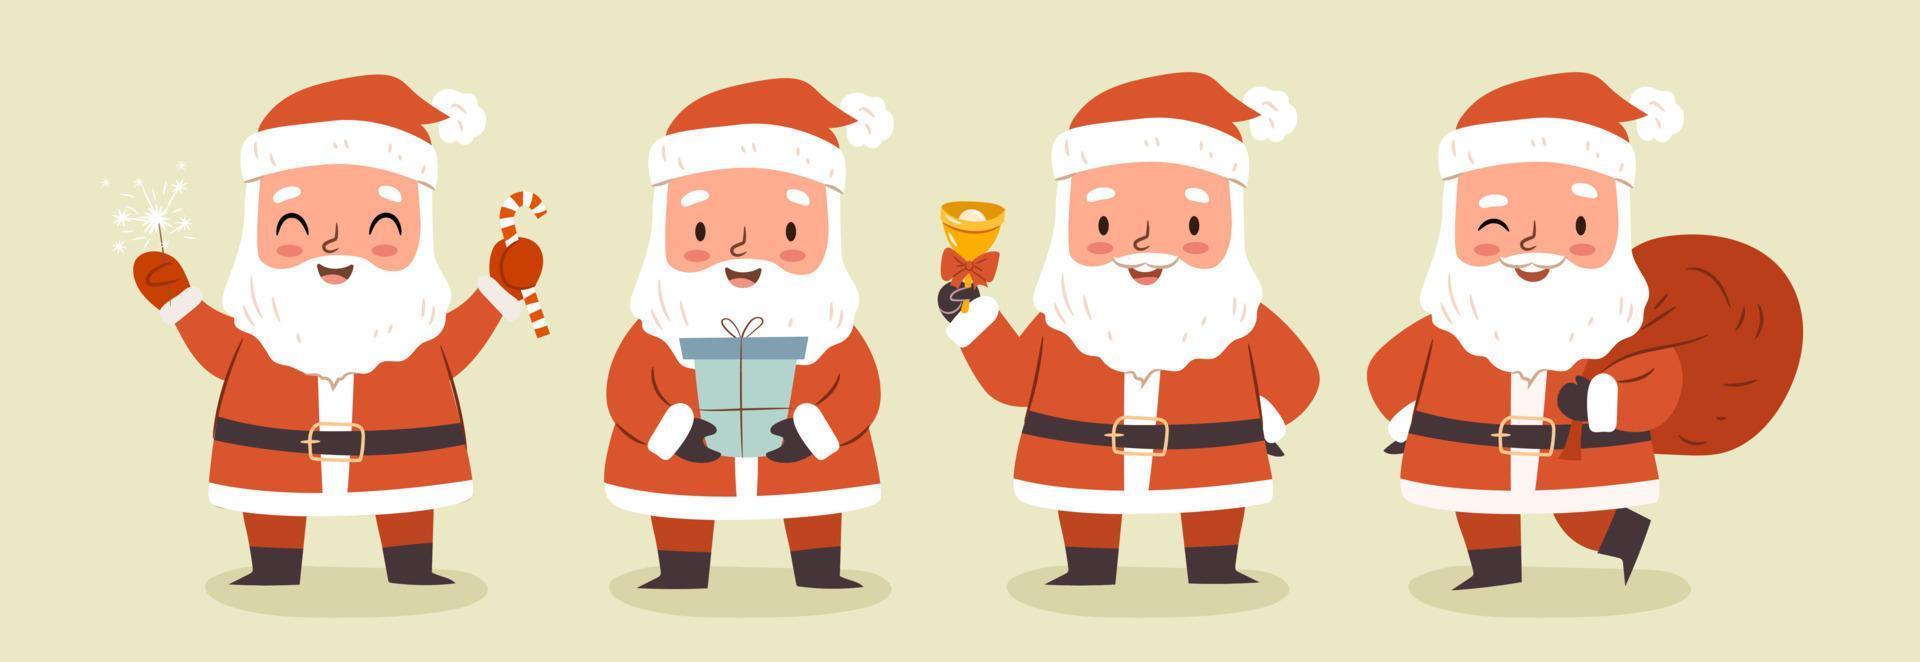 Weihnachtsmann-Zeichensatz. santa cluas in verschiedenen posen, isoliert auf leerem hintergrund. niedliche Cartoon-Vektor-Illustration vektor